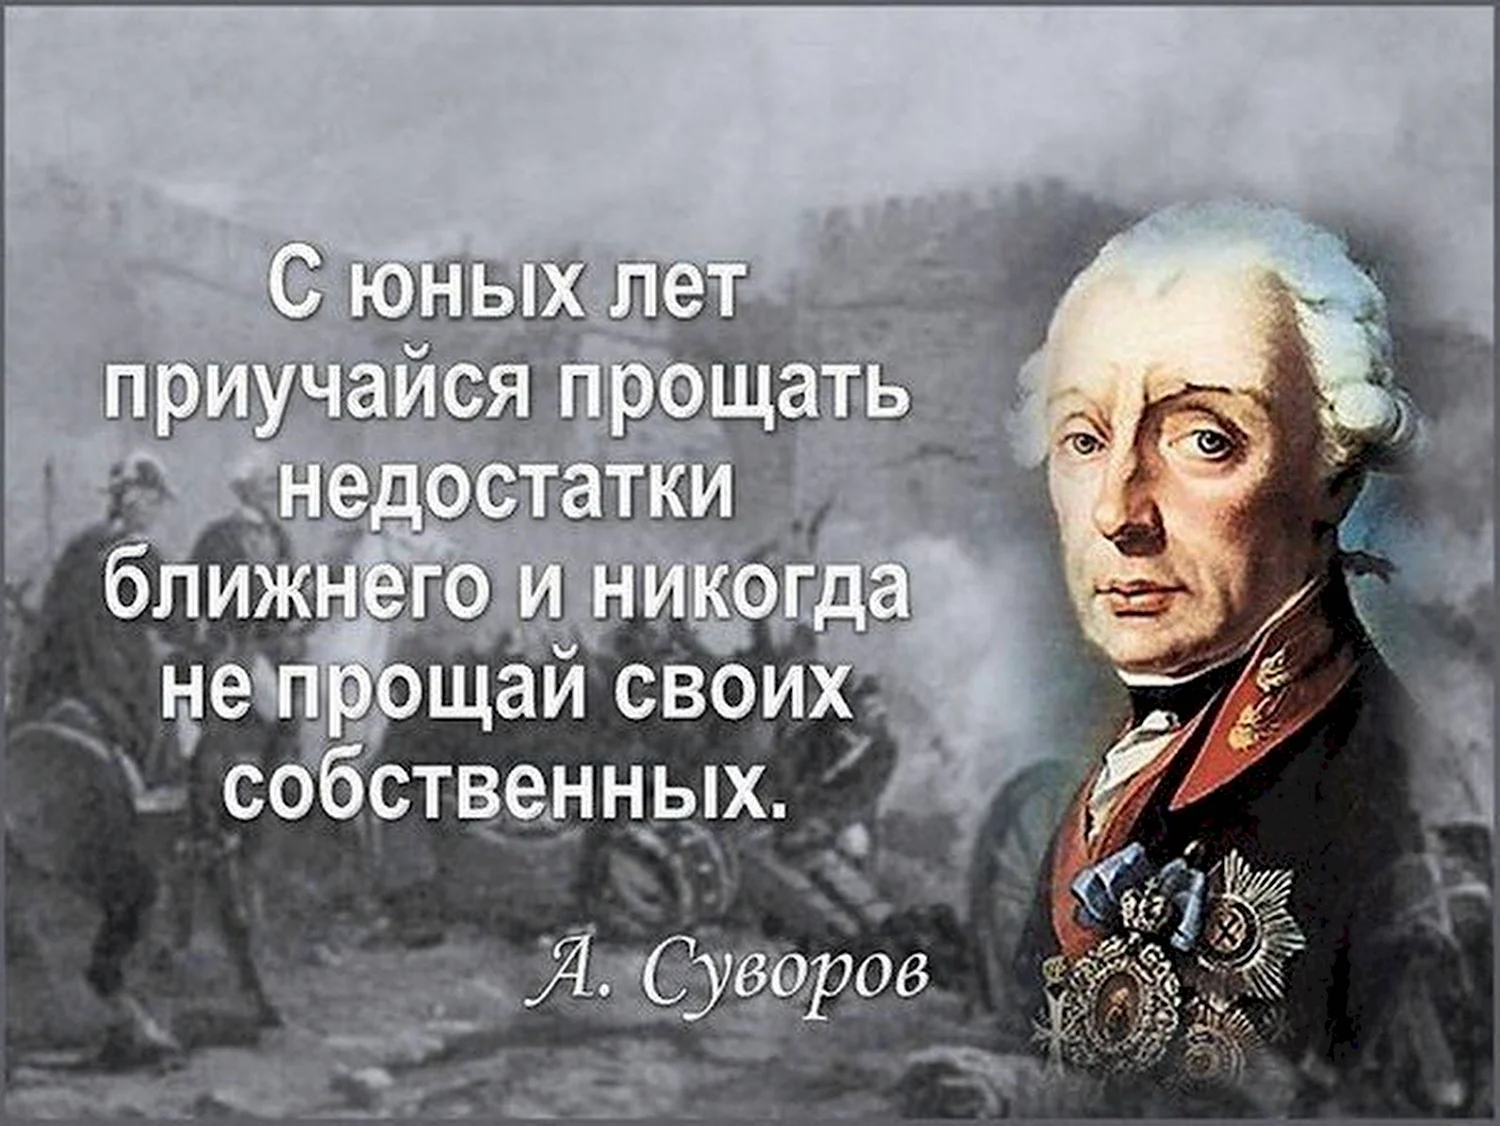 Суворов Александр Васильевич изречения